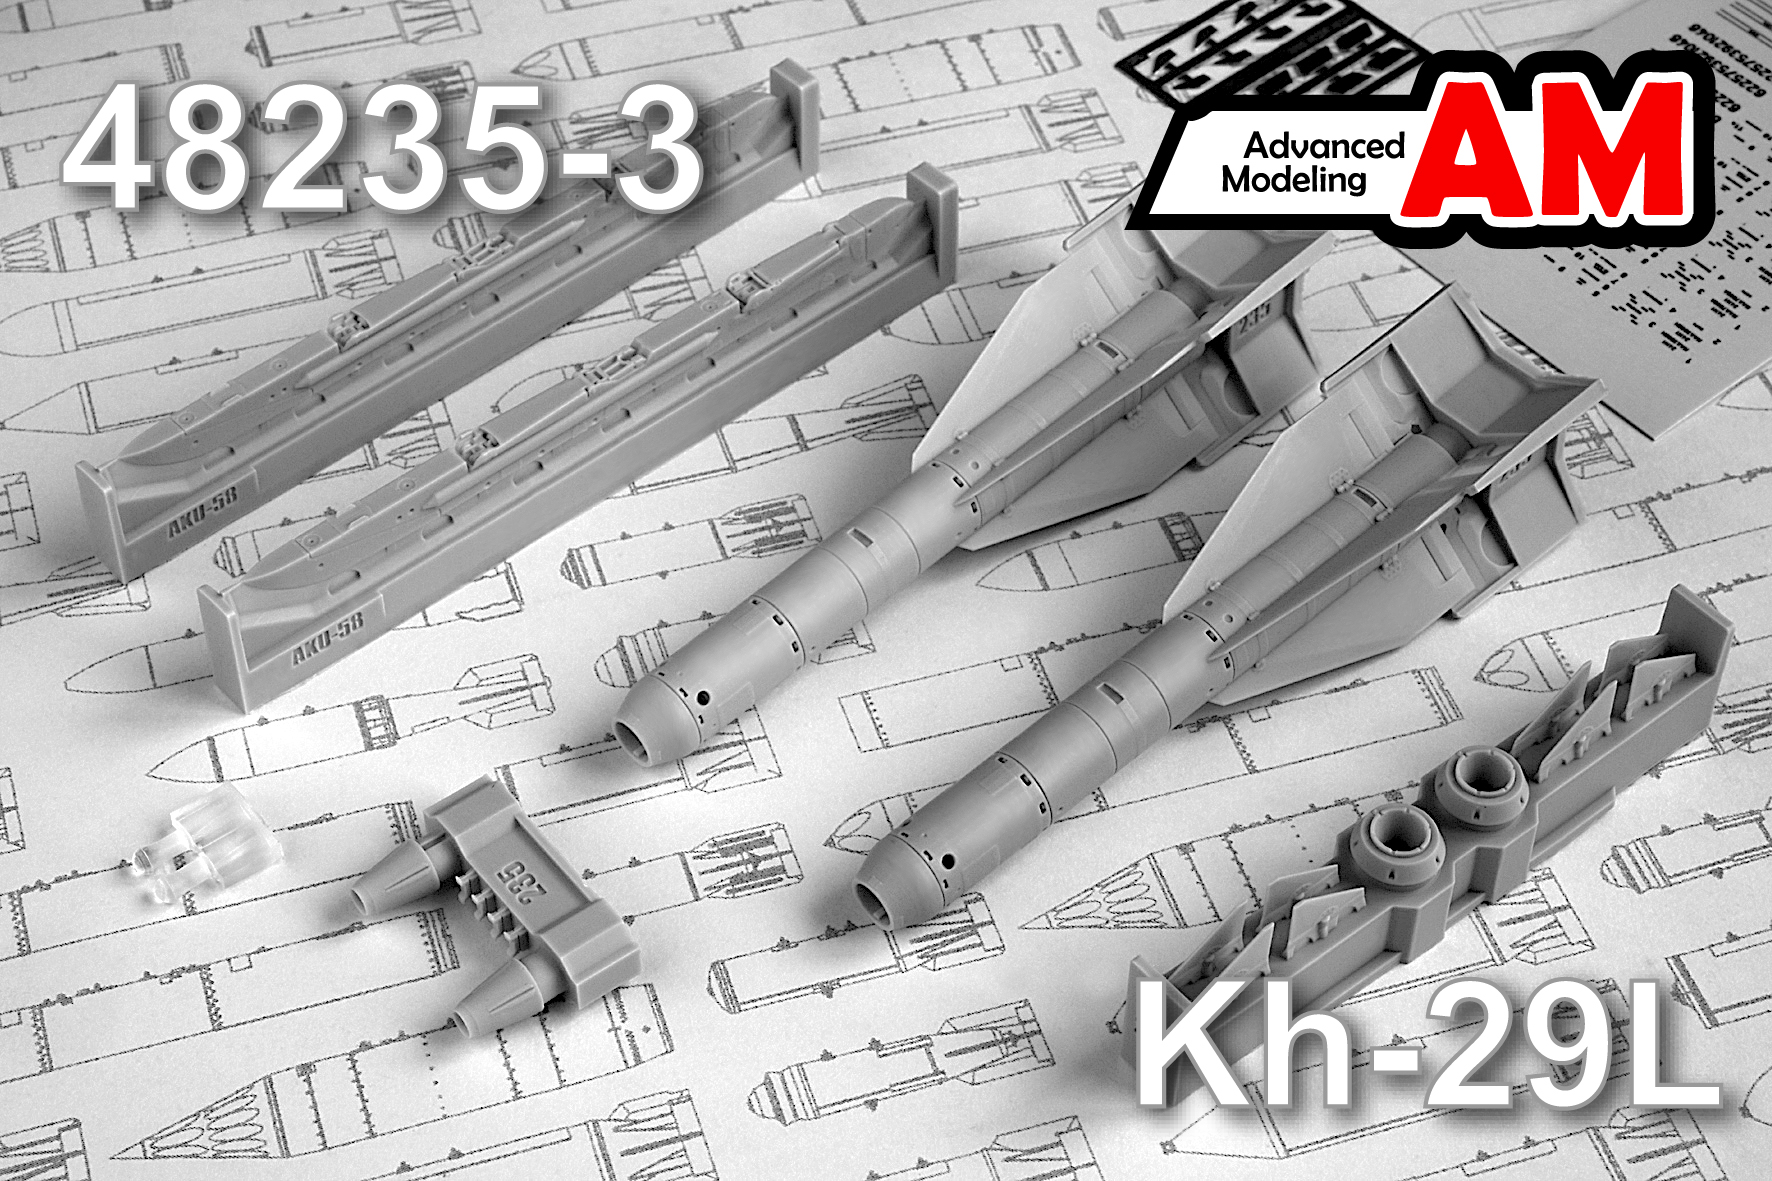 Дополнения из смолы 1/48 Авиационная управляемая ракета Х-29Л с АКУ-58 (Advanced Modeling)